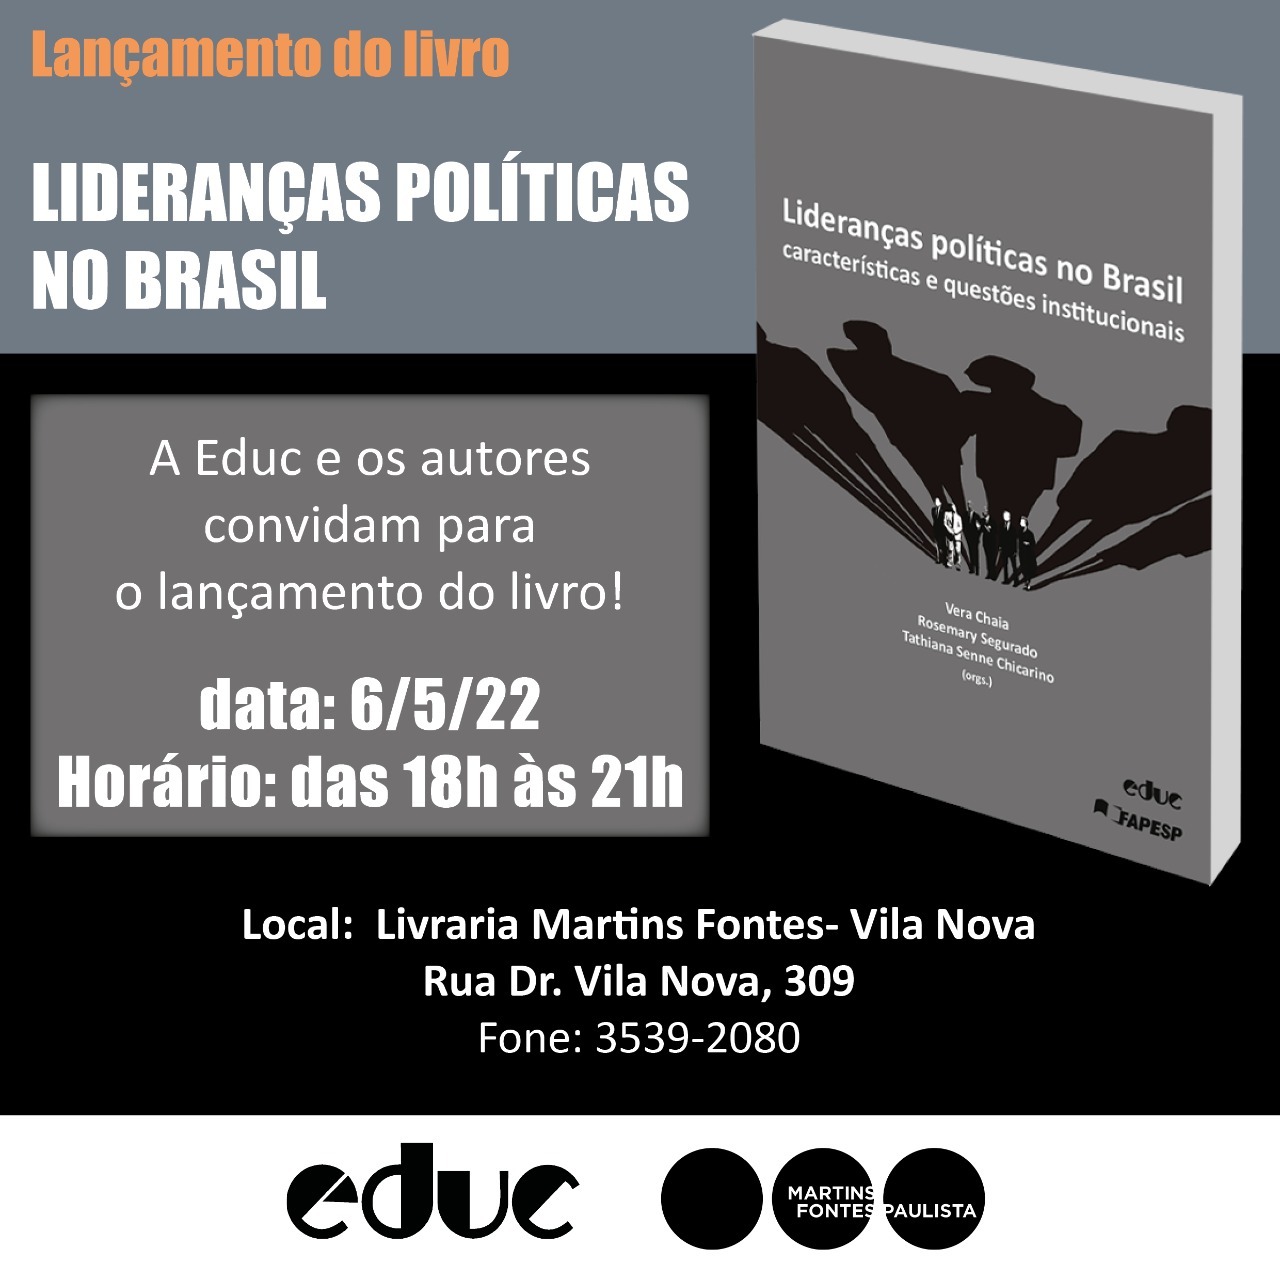 CLASSICAL MECHANICS  Livraria Martins Fontes Paulista